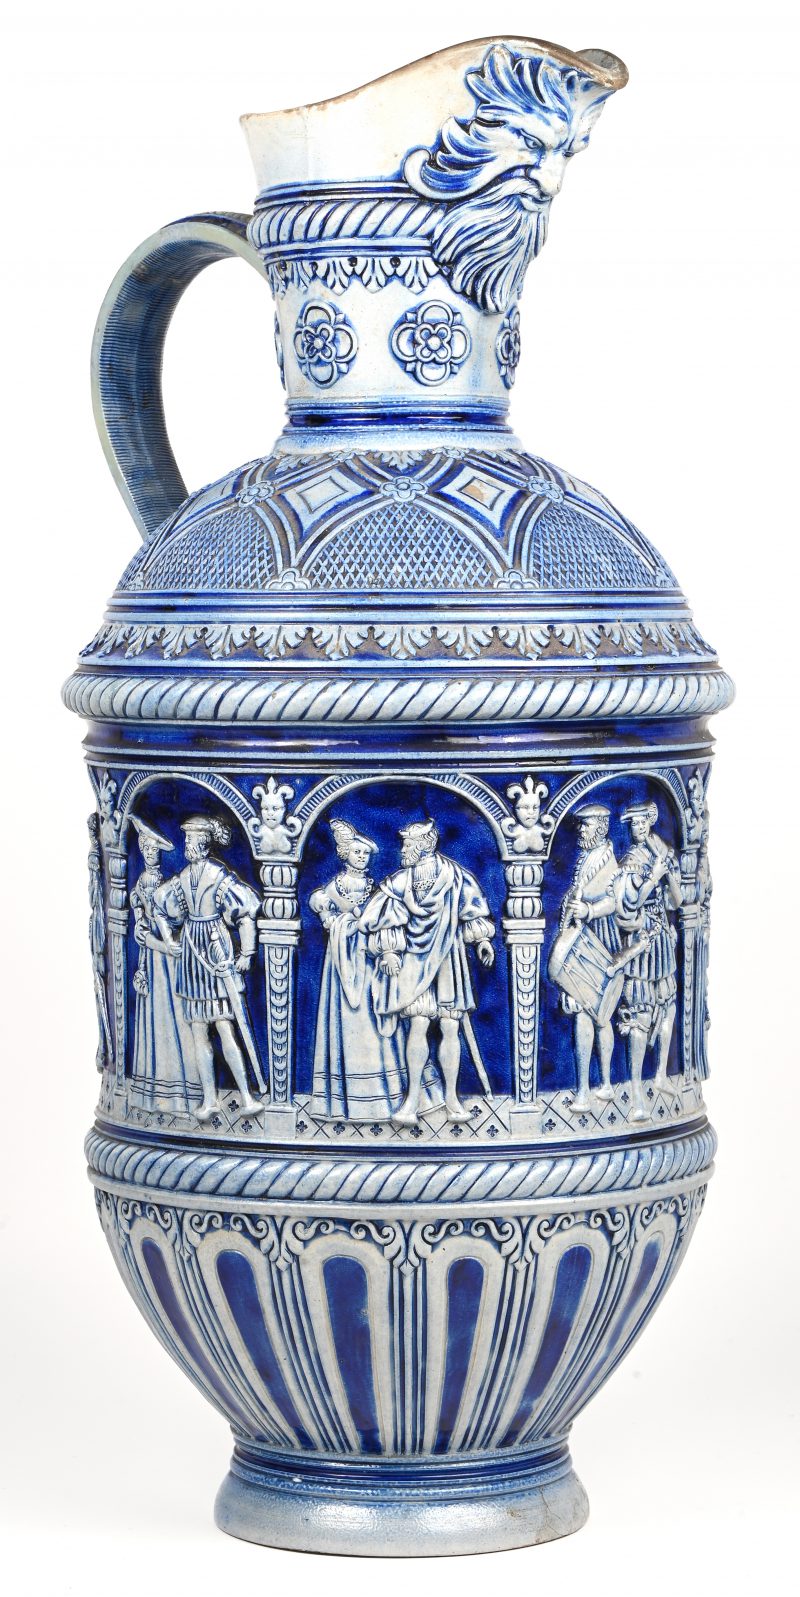 Een Duits aardewerken schenkkruik. Kobalt blauw met diverse figuur taferelen in het reliëf en gezicht met baard aan de teut. Westerwald steengoed, 19e eeuws.